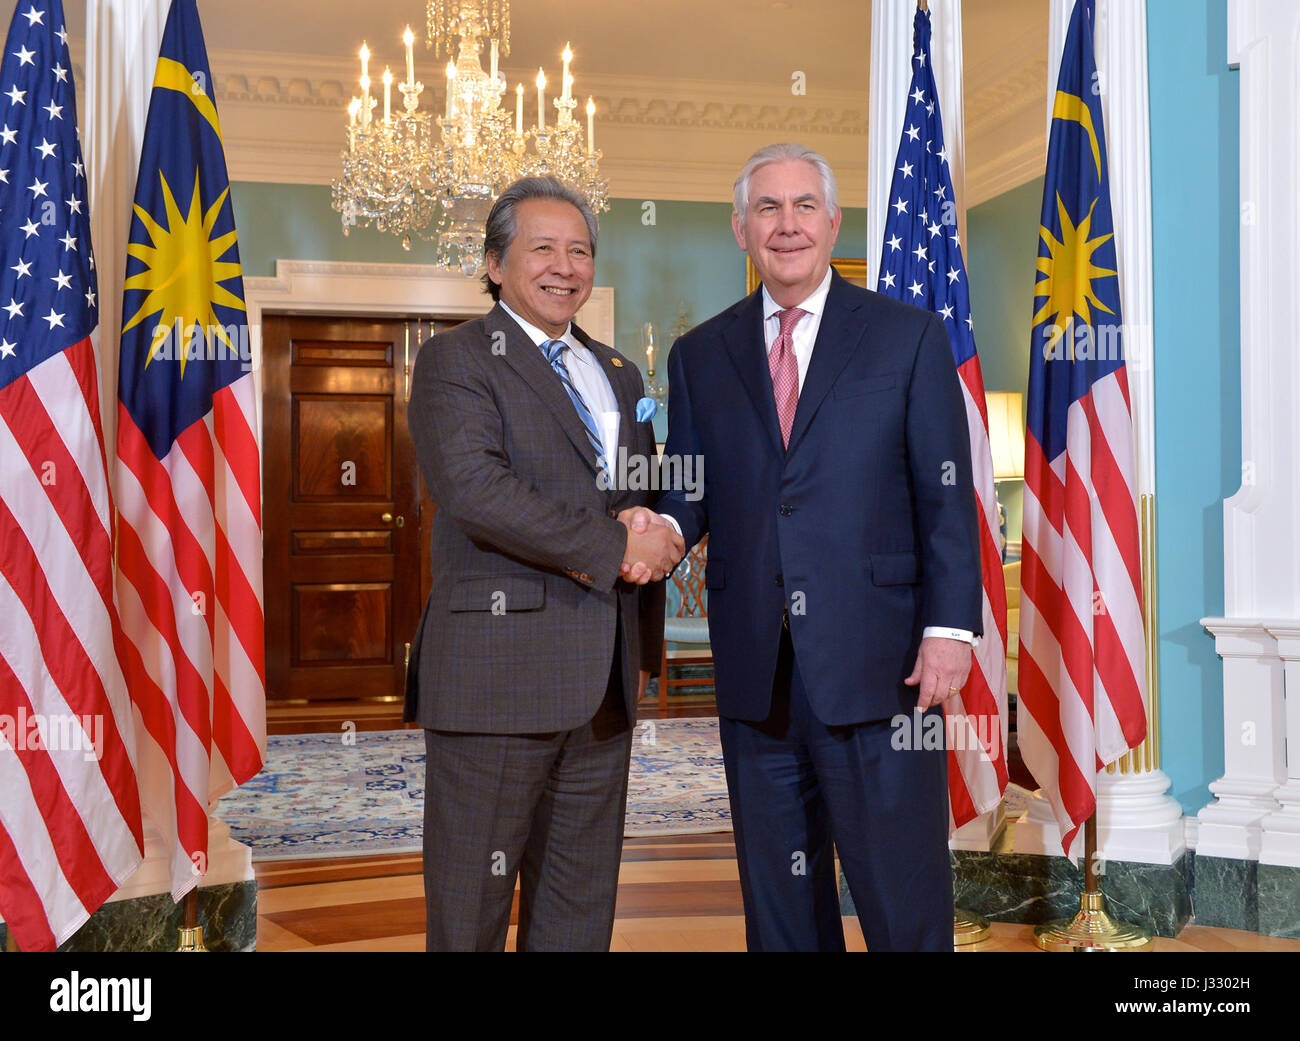 Secretario Tillerson se reúne con el Ministro de Relaciones Exteriores de Malasia Dato' Sri Anifah Aman, en el Departamento de Estado, 21 de marzo de 2017. Foto de stock